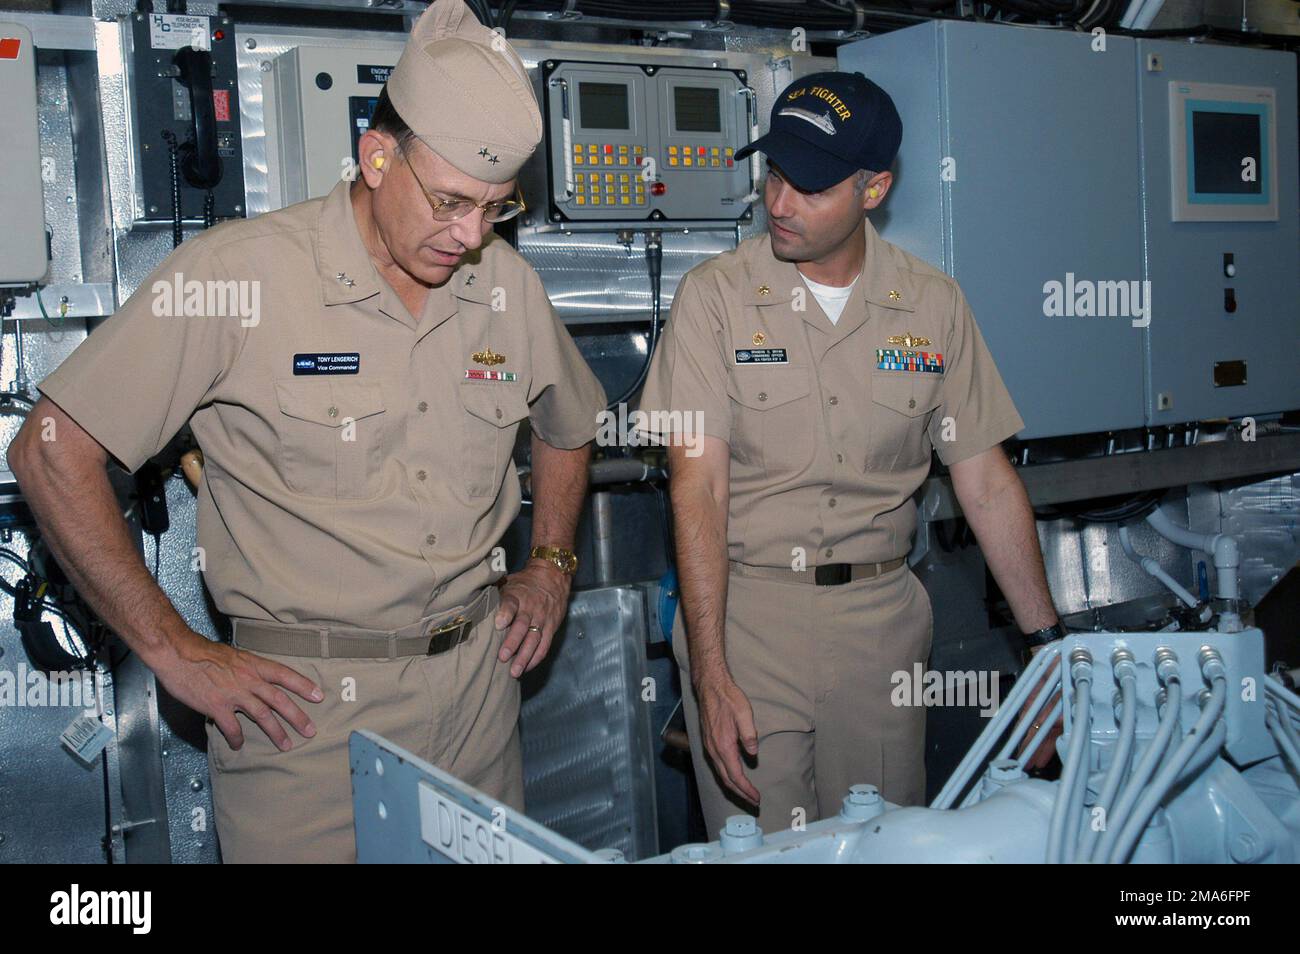 A bordo della nave US Navys (USN) più recente, il COMBATTENTE MARINO USS (FSF 1), l'ammiraglio posteriore USN (RADM) Anthony Lengerich (a sinistra), Vice-Commander, Naval Sea Systems Command (NAVSEA), e le navi Commander, USN Lieutenant Commander (LCDR) Brandon S. Bryan, discutono il funzionamento delle navi motori diesel di propulsione. Il COMBATTENTE MARINO sarà utilizzato per valutare le prestazioni idornodinamiche, il comportamento strutturale, la flessibilità della missione e i sistemi di propulsione delle navi ad alta velocità, nonché per testare una varietà di tecnologie, che consentiranno alla Marina di operare in modo più efficace nelle acque del litorale o vicino alla costa. Bas Foto Stock